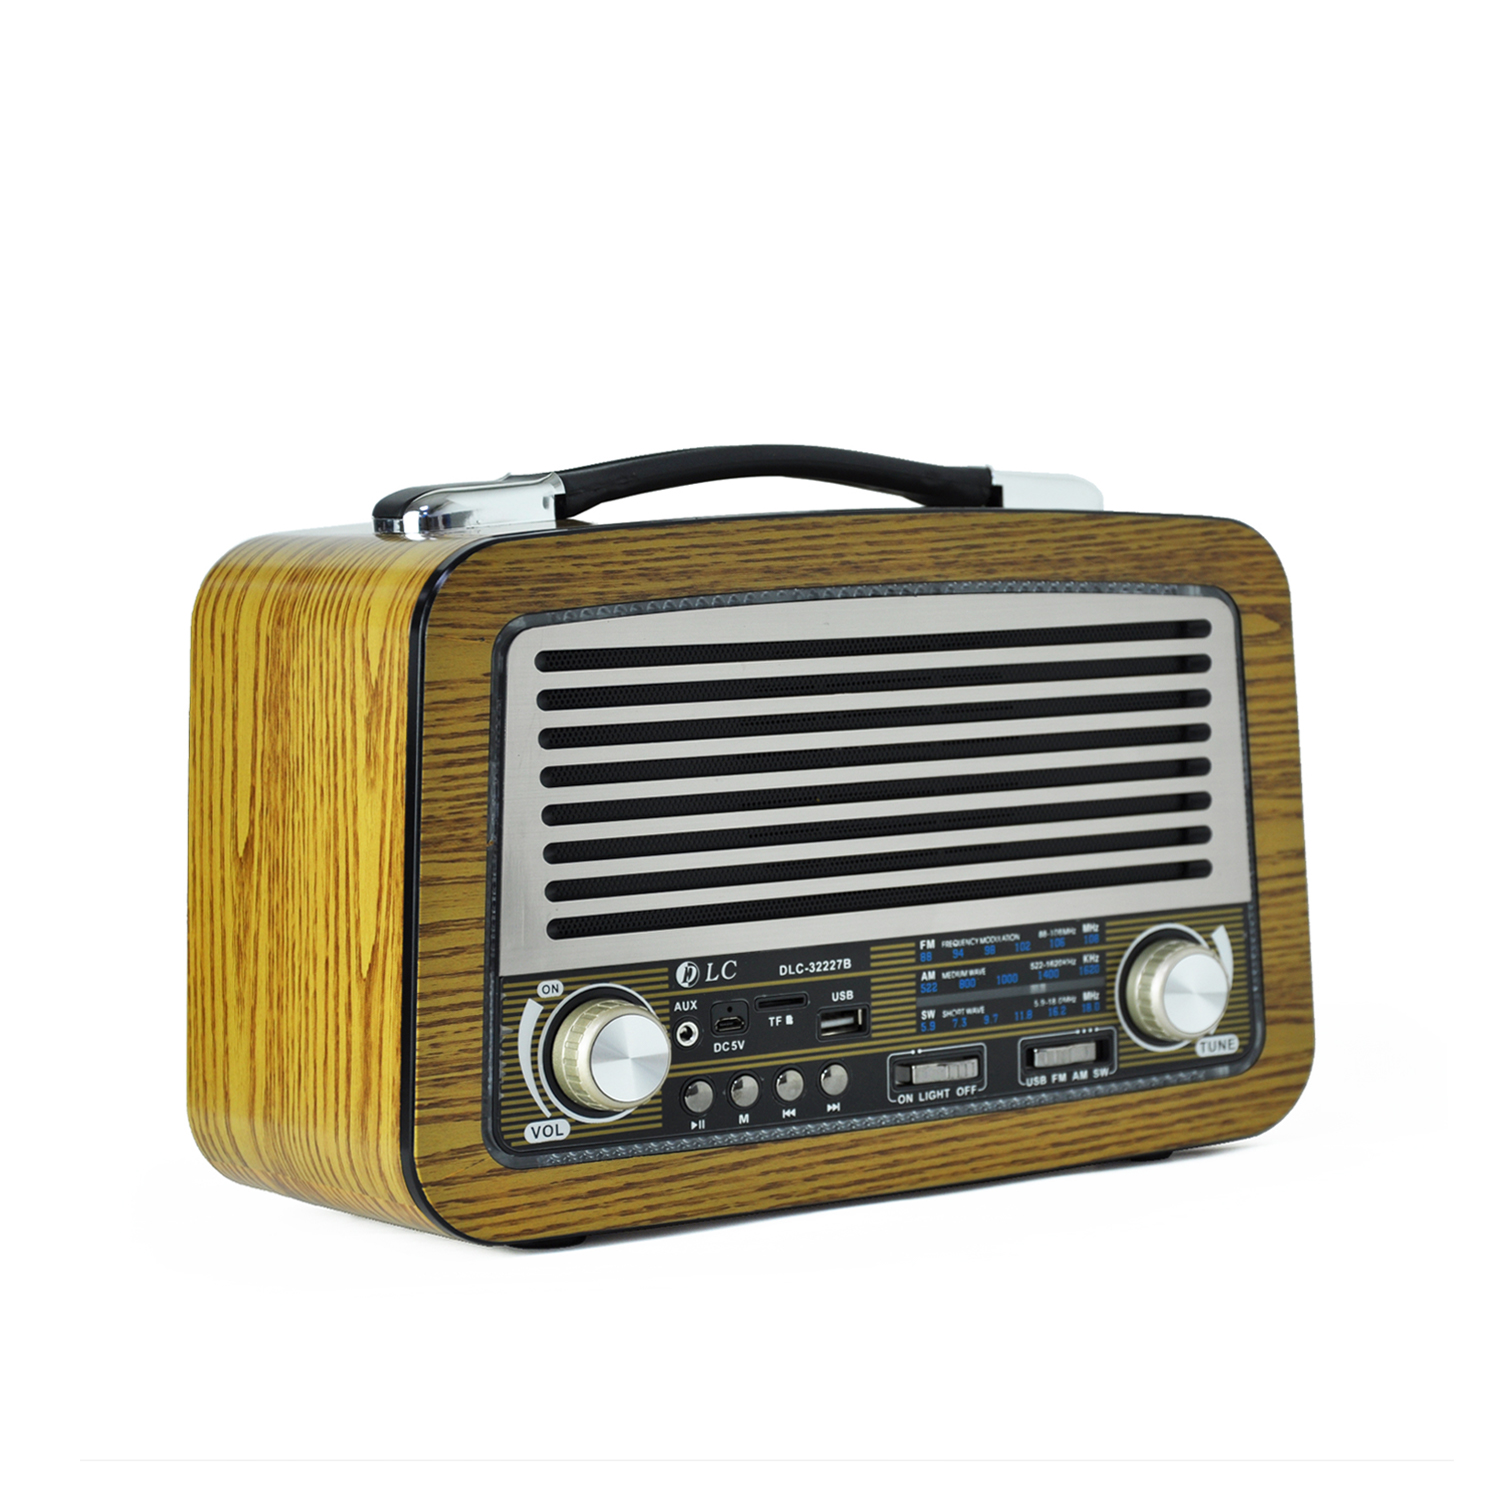 DLC-32227Bradio setradios de comunicacionam fm portable radio